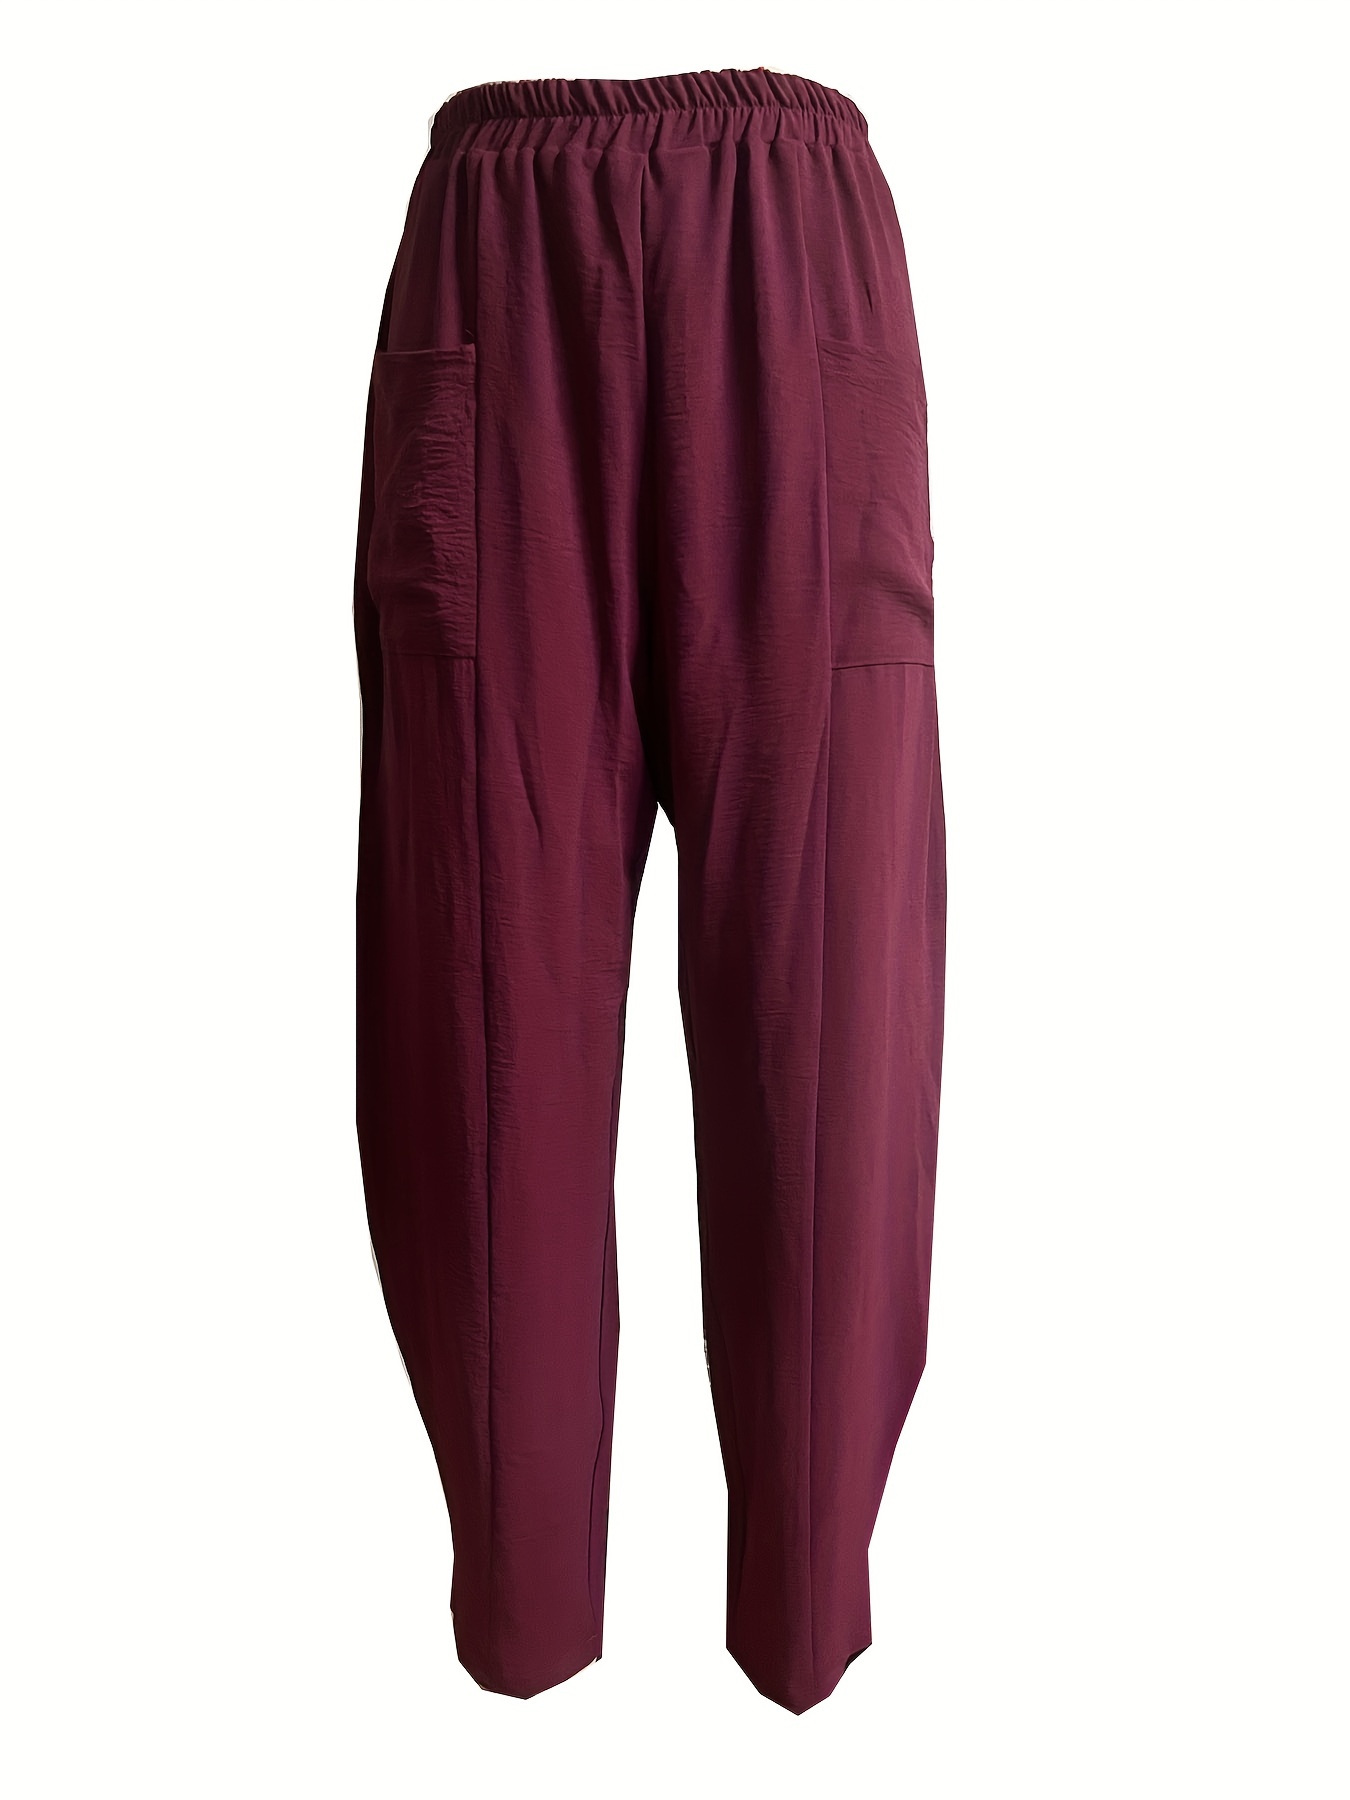 Harem Pants For Women. Harem Pant With Pattern & Big Pocket– Blue, Green,  Pink, Red –Elastic Waist M